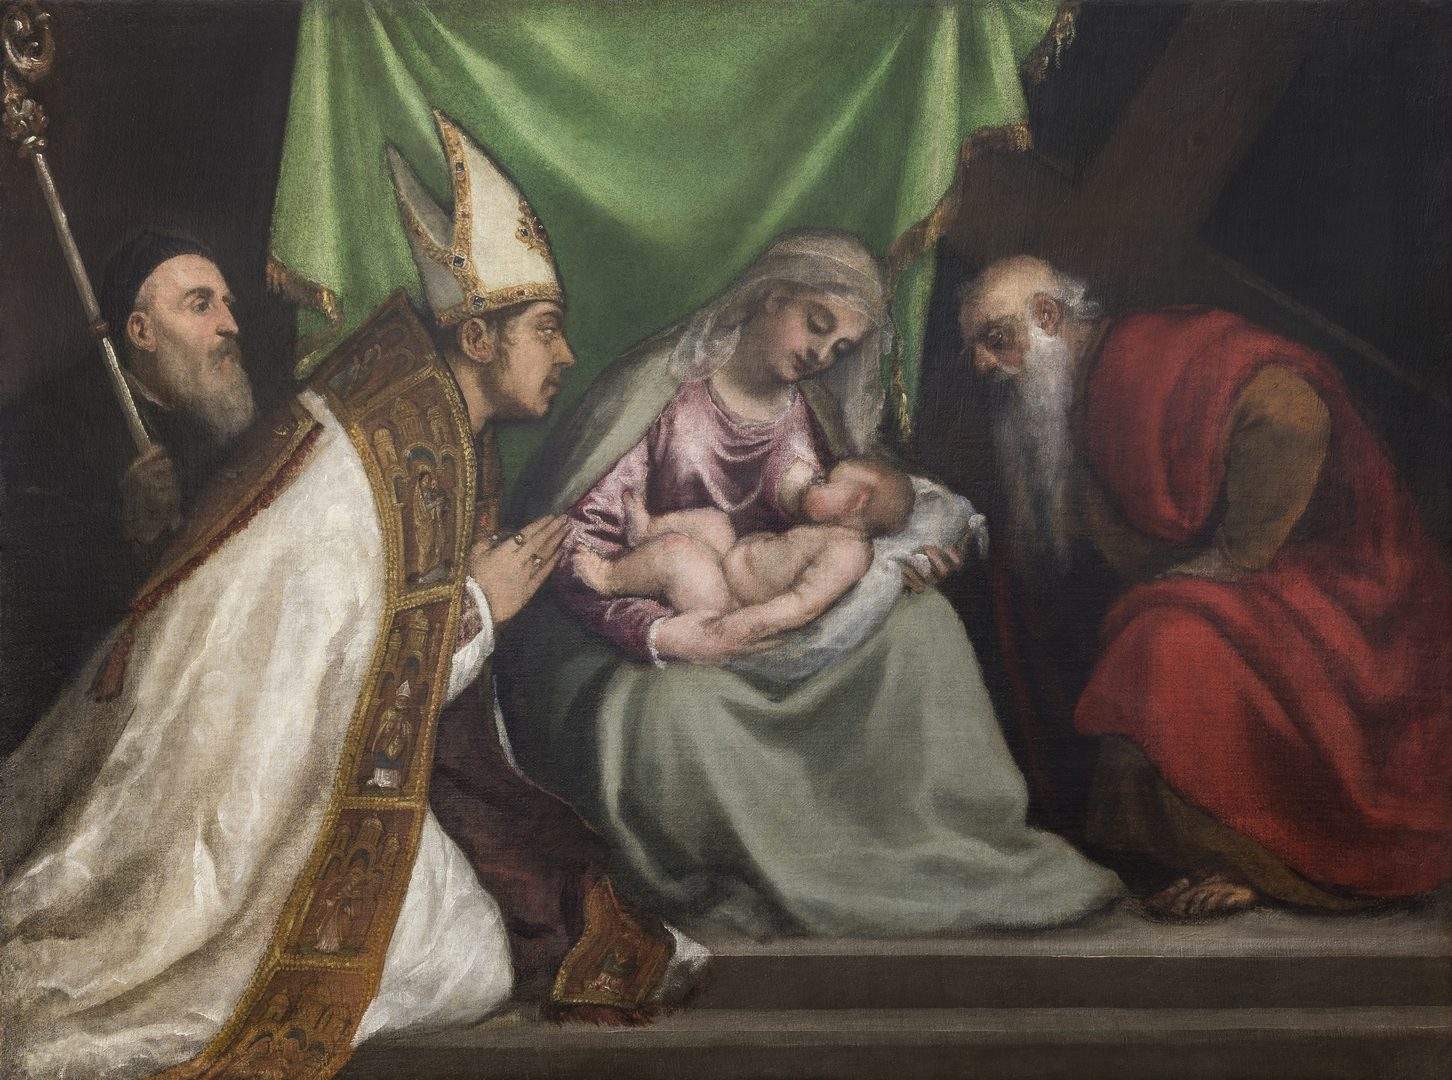 Finaliza la restauración del retablo de Tiziano realizado para su Pieve di Cadore